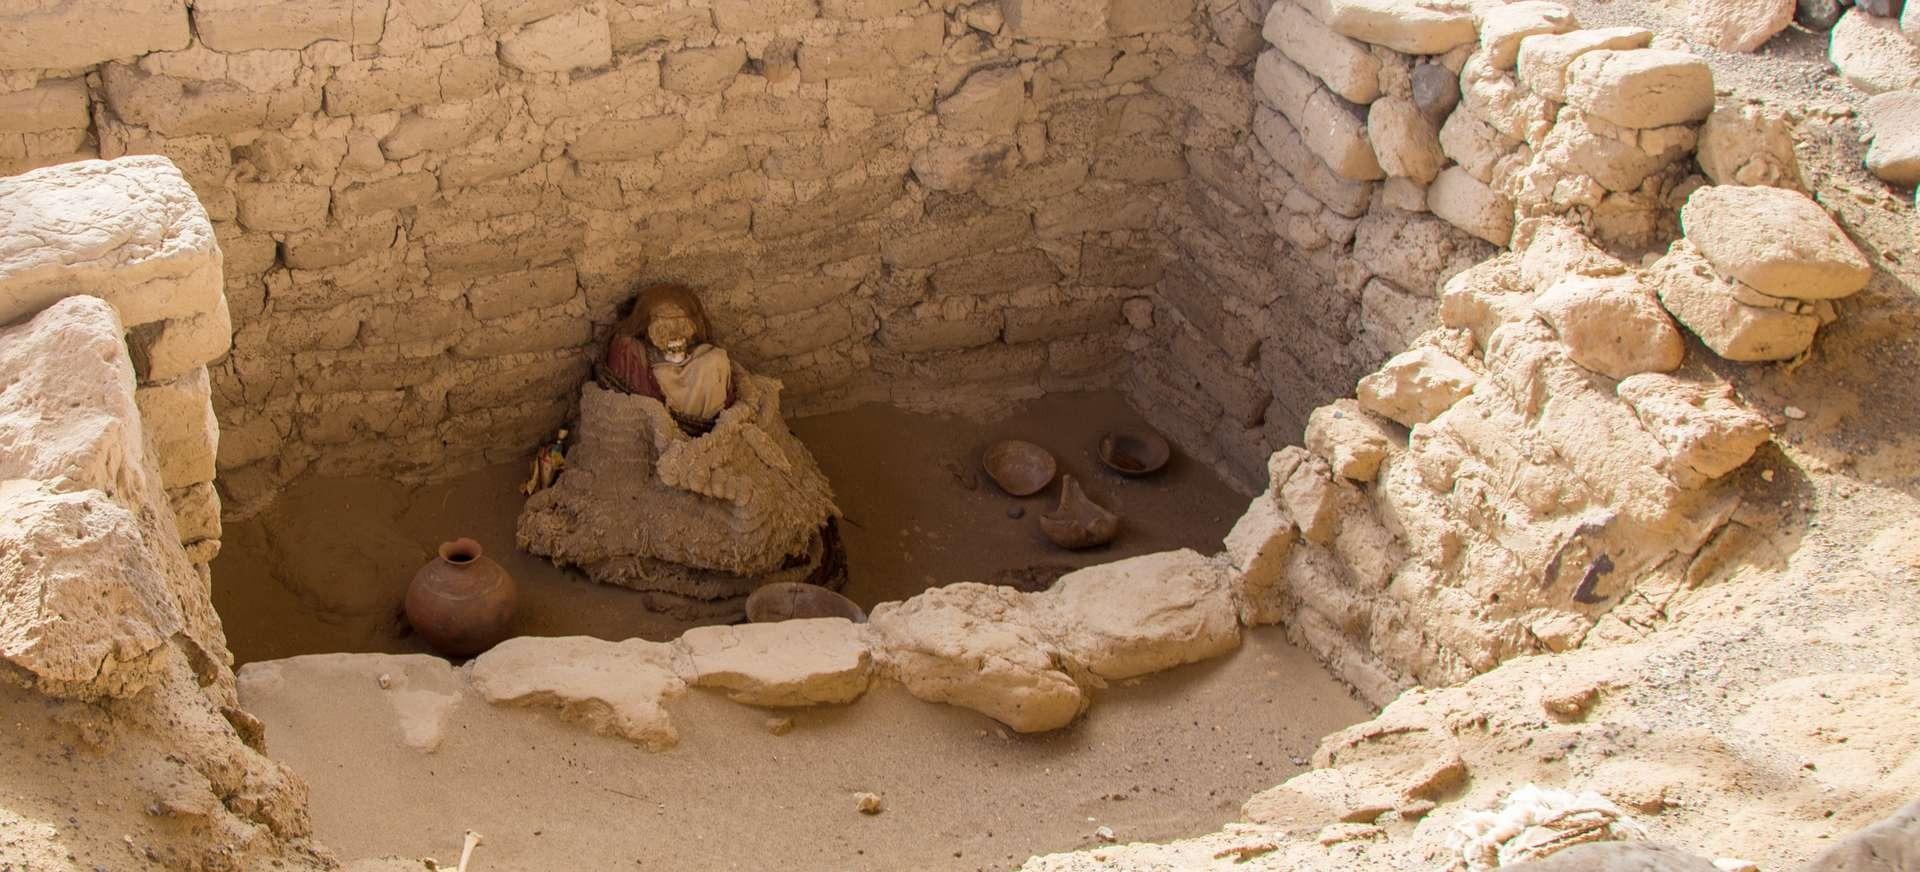 2 momie perou - Haarige Mumie in hervorragendem Zustand in Peru entdeckt.